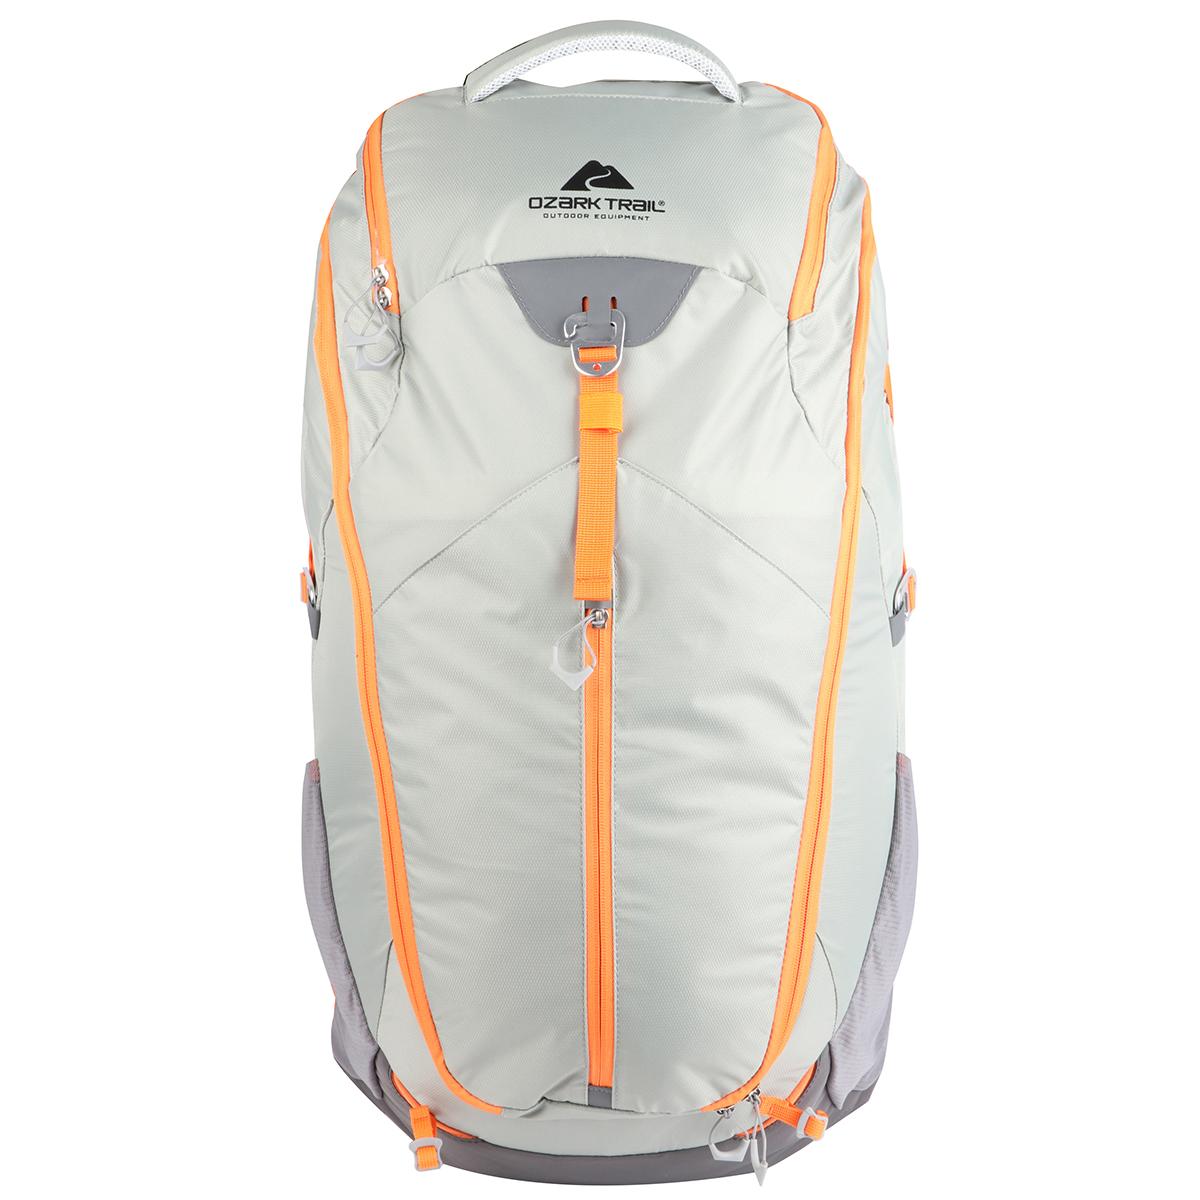 Ozark Trail 40L Lightweight Hiking Backpack for $20.98